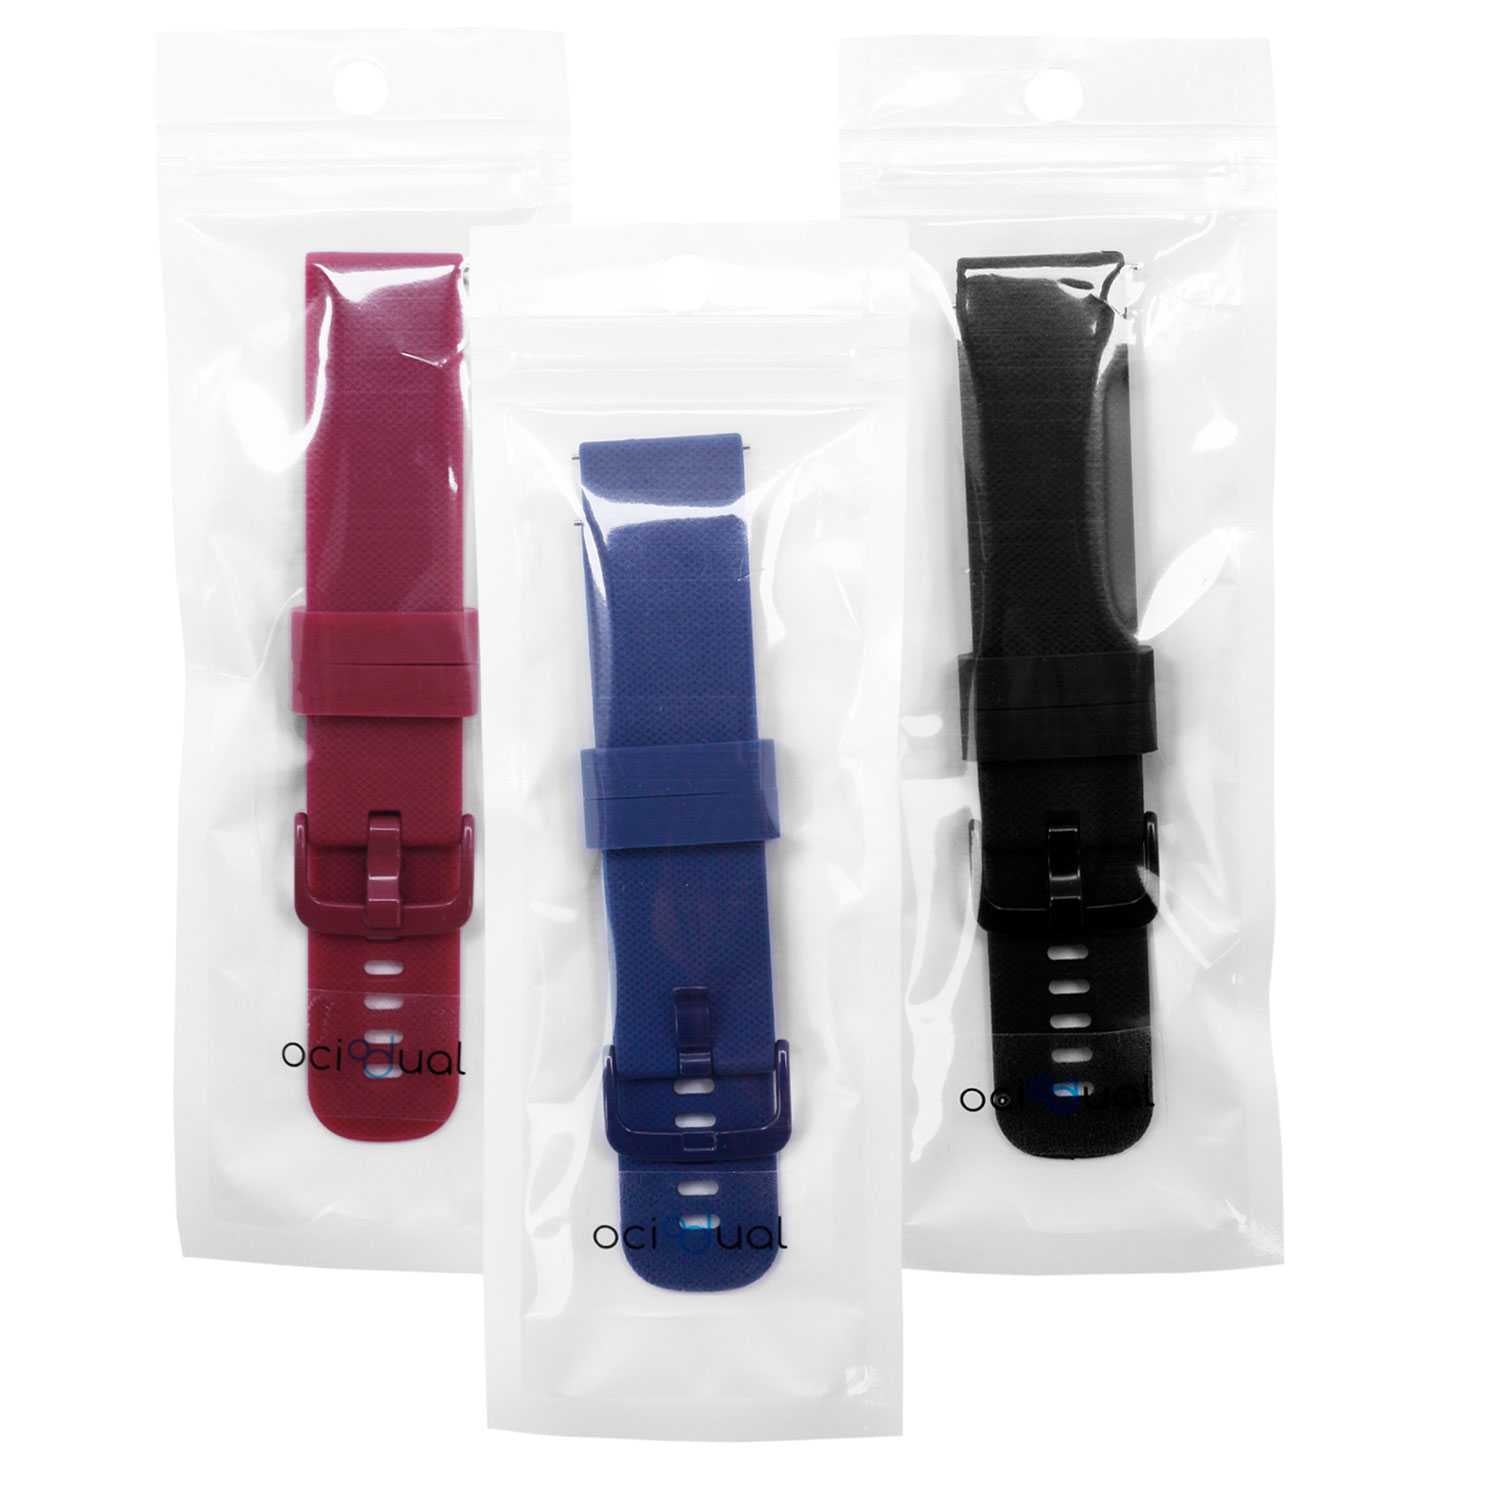 Pack de 3 Correas de Silicona para Reloj,20mm, Smartwatch con liberación rápida, Compatible con Amazfit, Garmin, Samsung Galaxy Watch, para Hombre y Mujer,Negro/Azul Oscuro/Burdeos